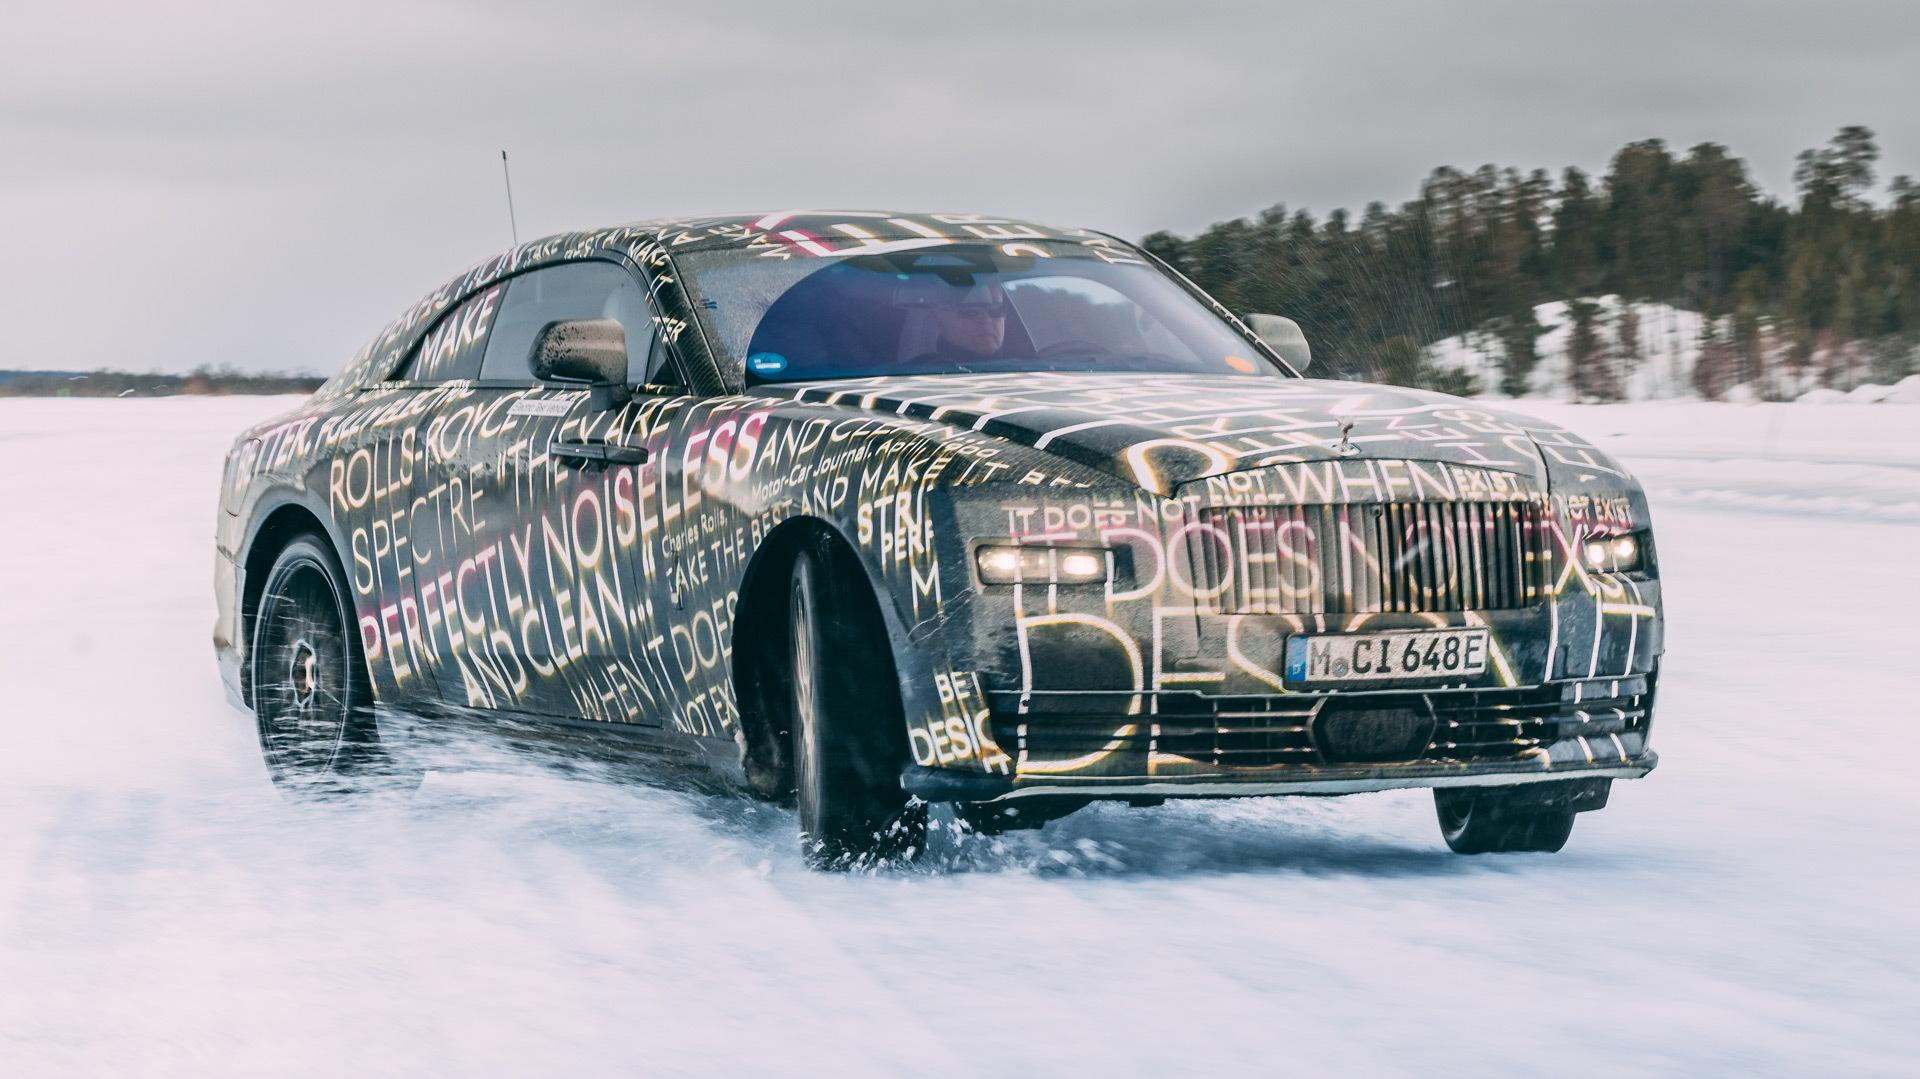 Watch The Rolls Royce Spectre As It Undergoes Winter Testing